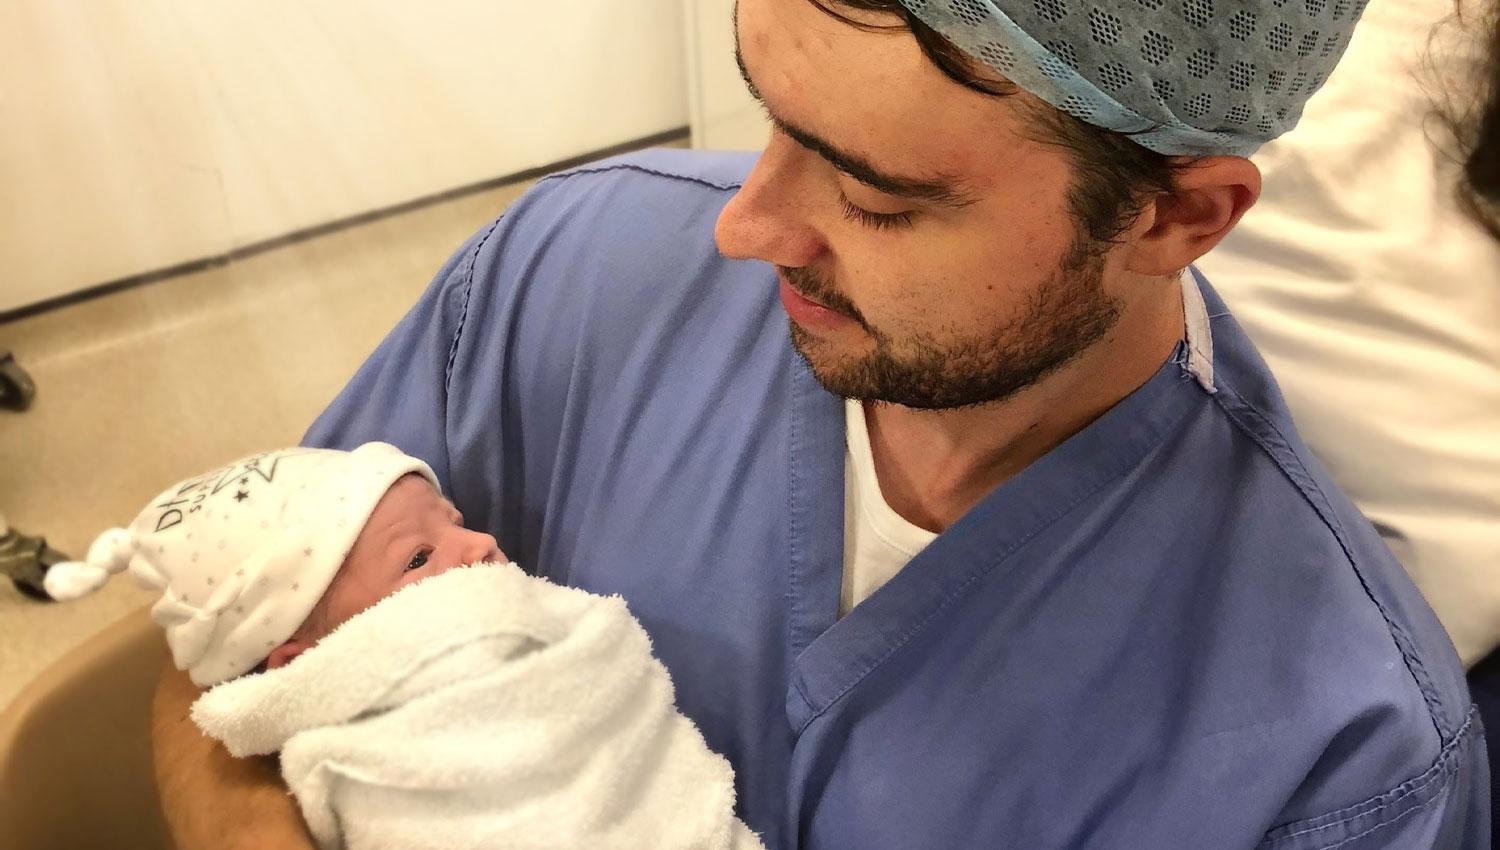 Luke Morgan and baby Elijah